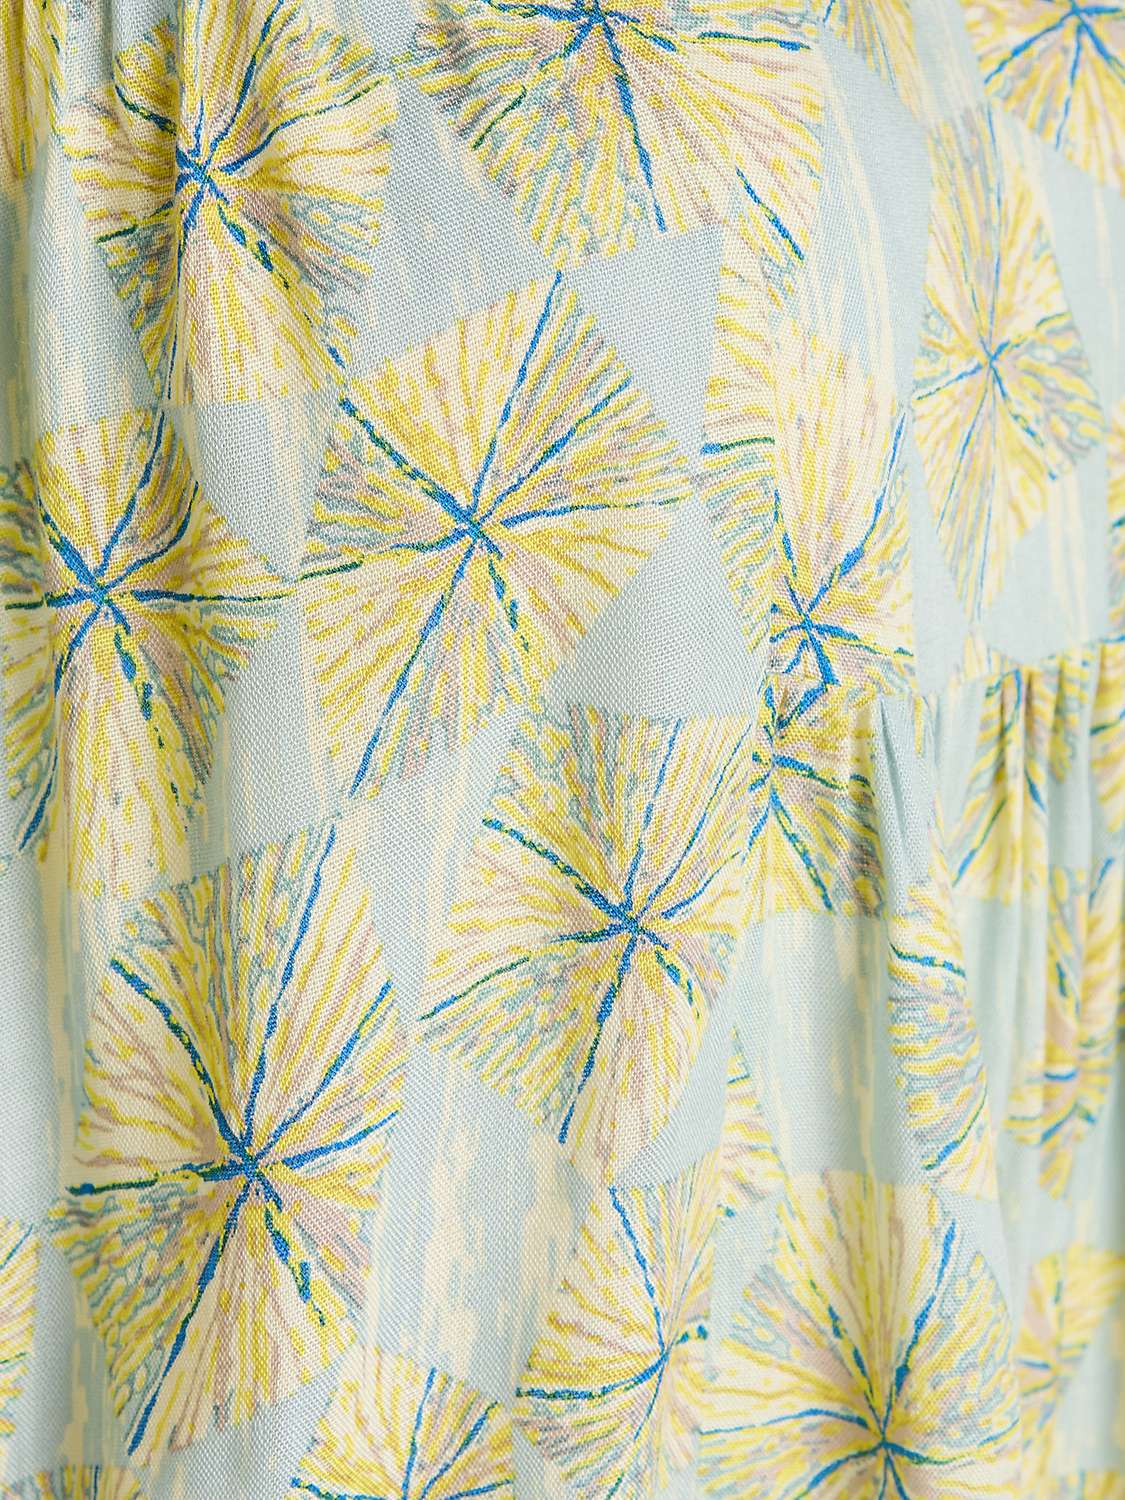 Buy Unmade Copenhagen Unique Short Sleeve Dress Online at johnlewis.com